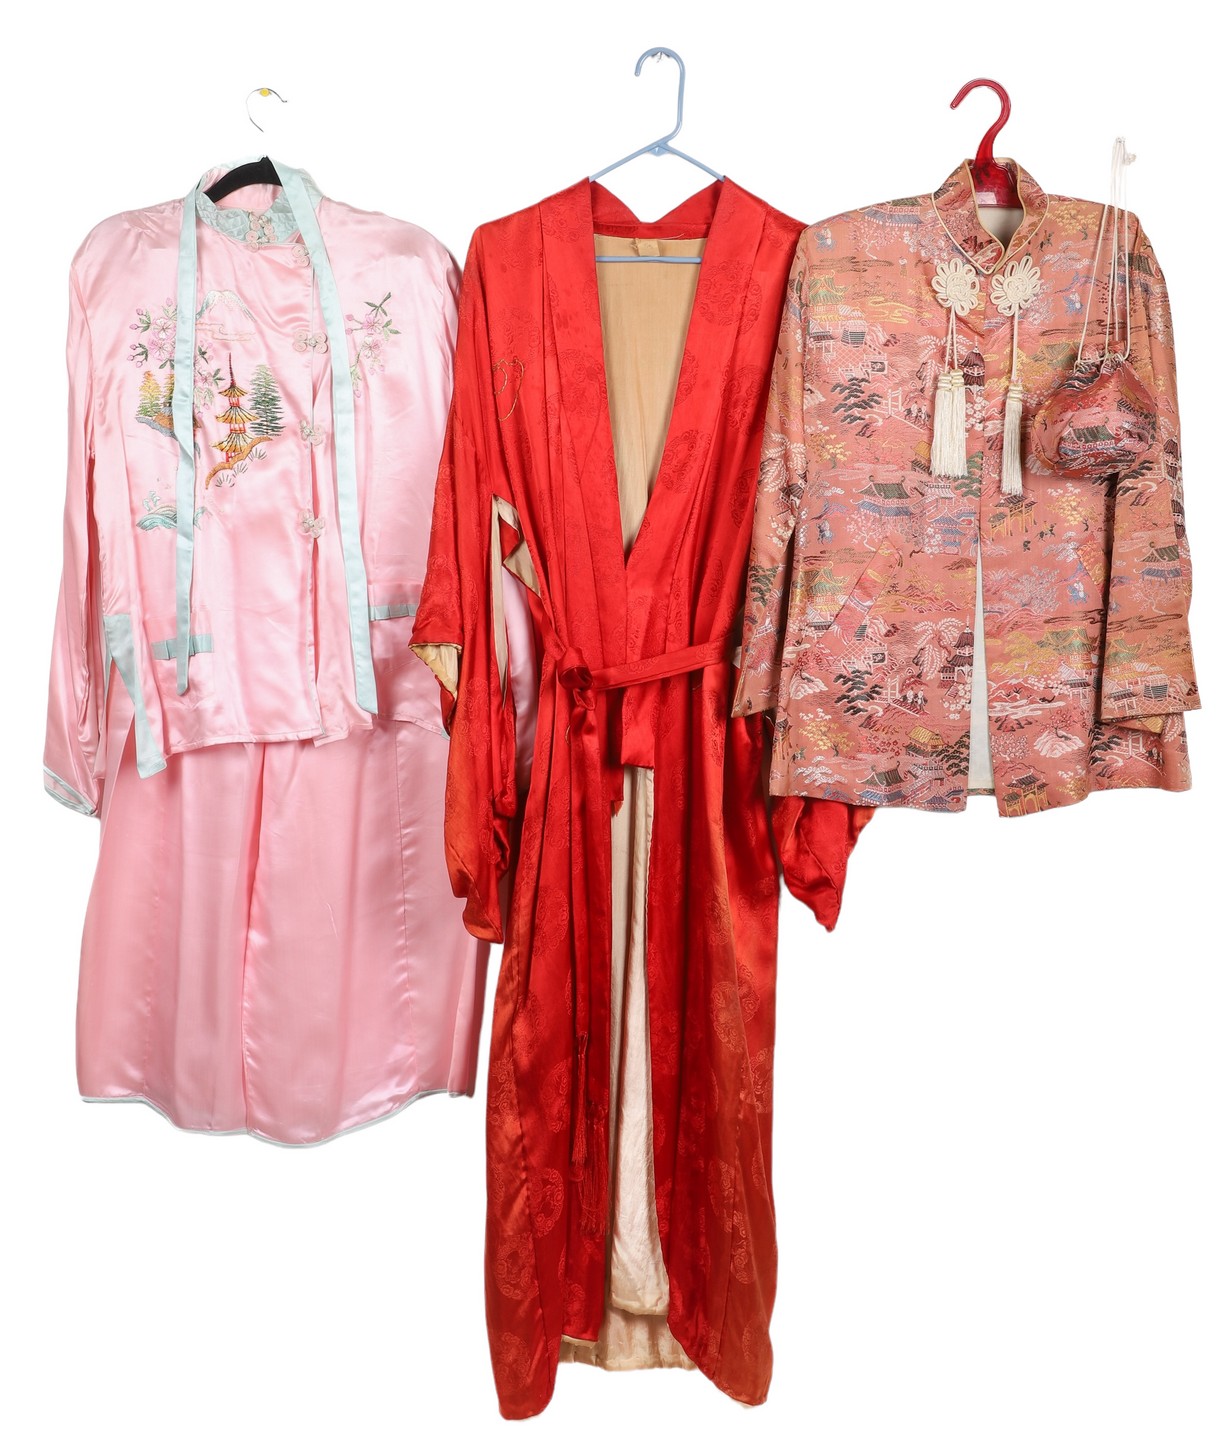 (3) Asian Robe, jacket and pajamas